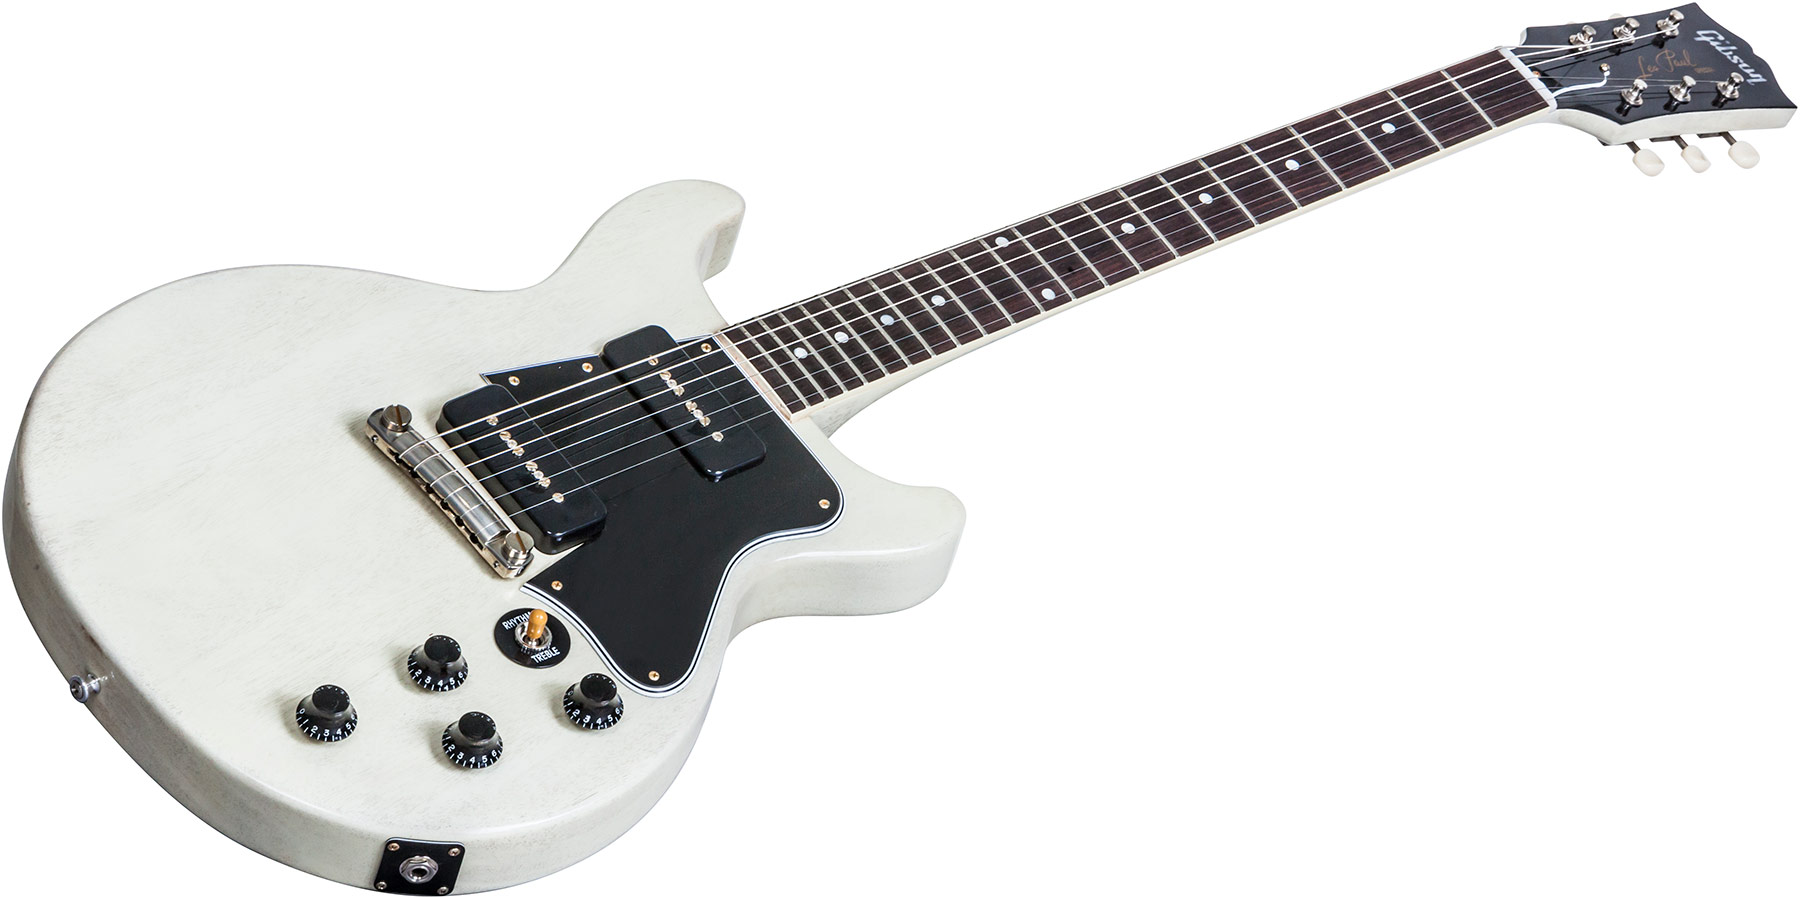 Gibson Custom Shop Les Paul Special Double Cut Nh 2017 - Tv White - Guitarra eléctrica de doble corte - Variation 2